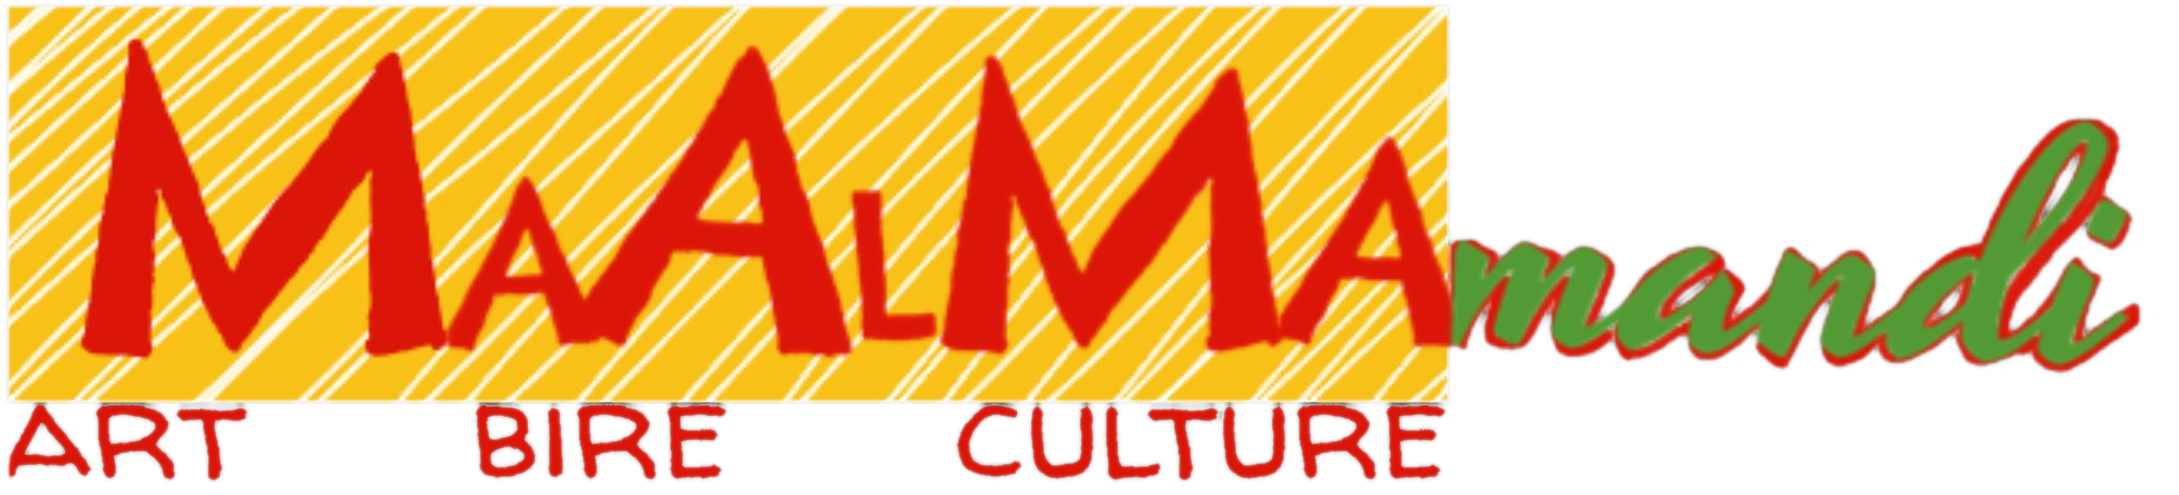 MaAlMamandi - Art Bire Culture - logo